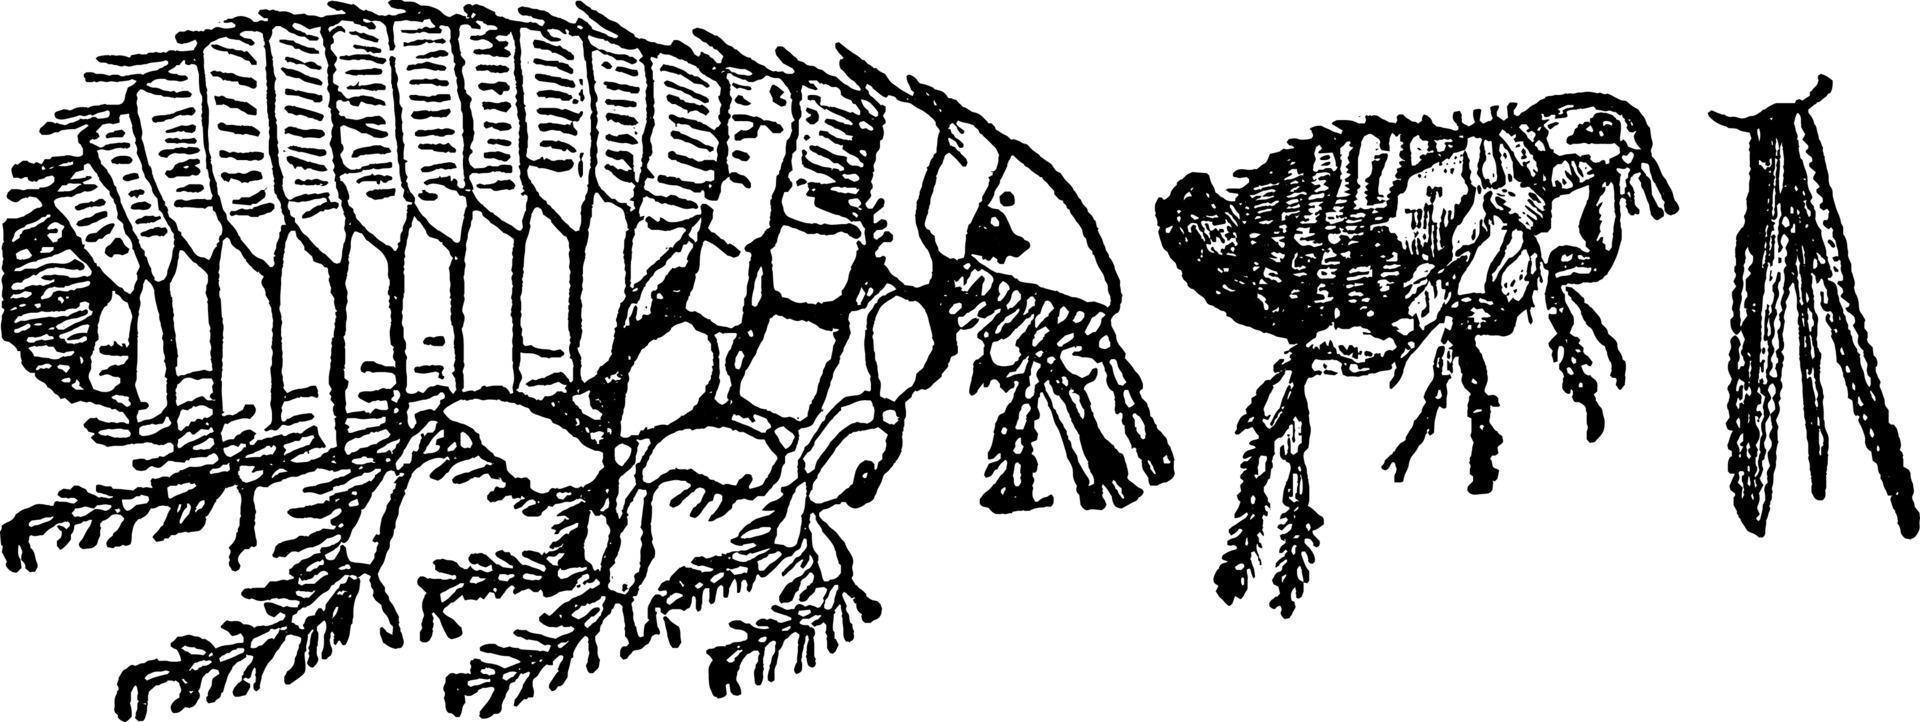 pulga de perro, ilustración vintage. vector